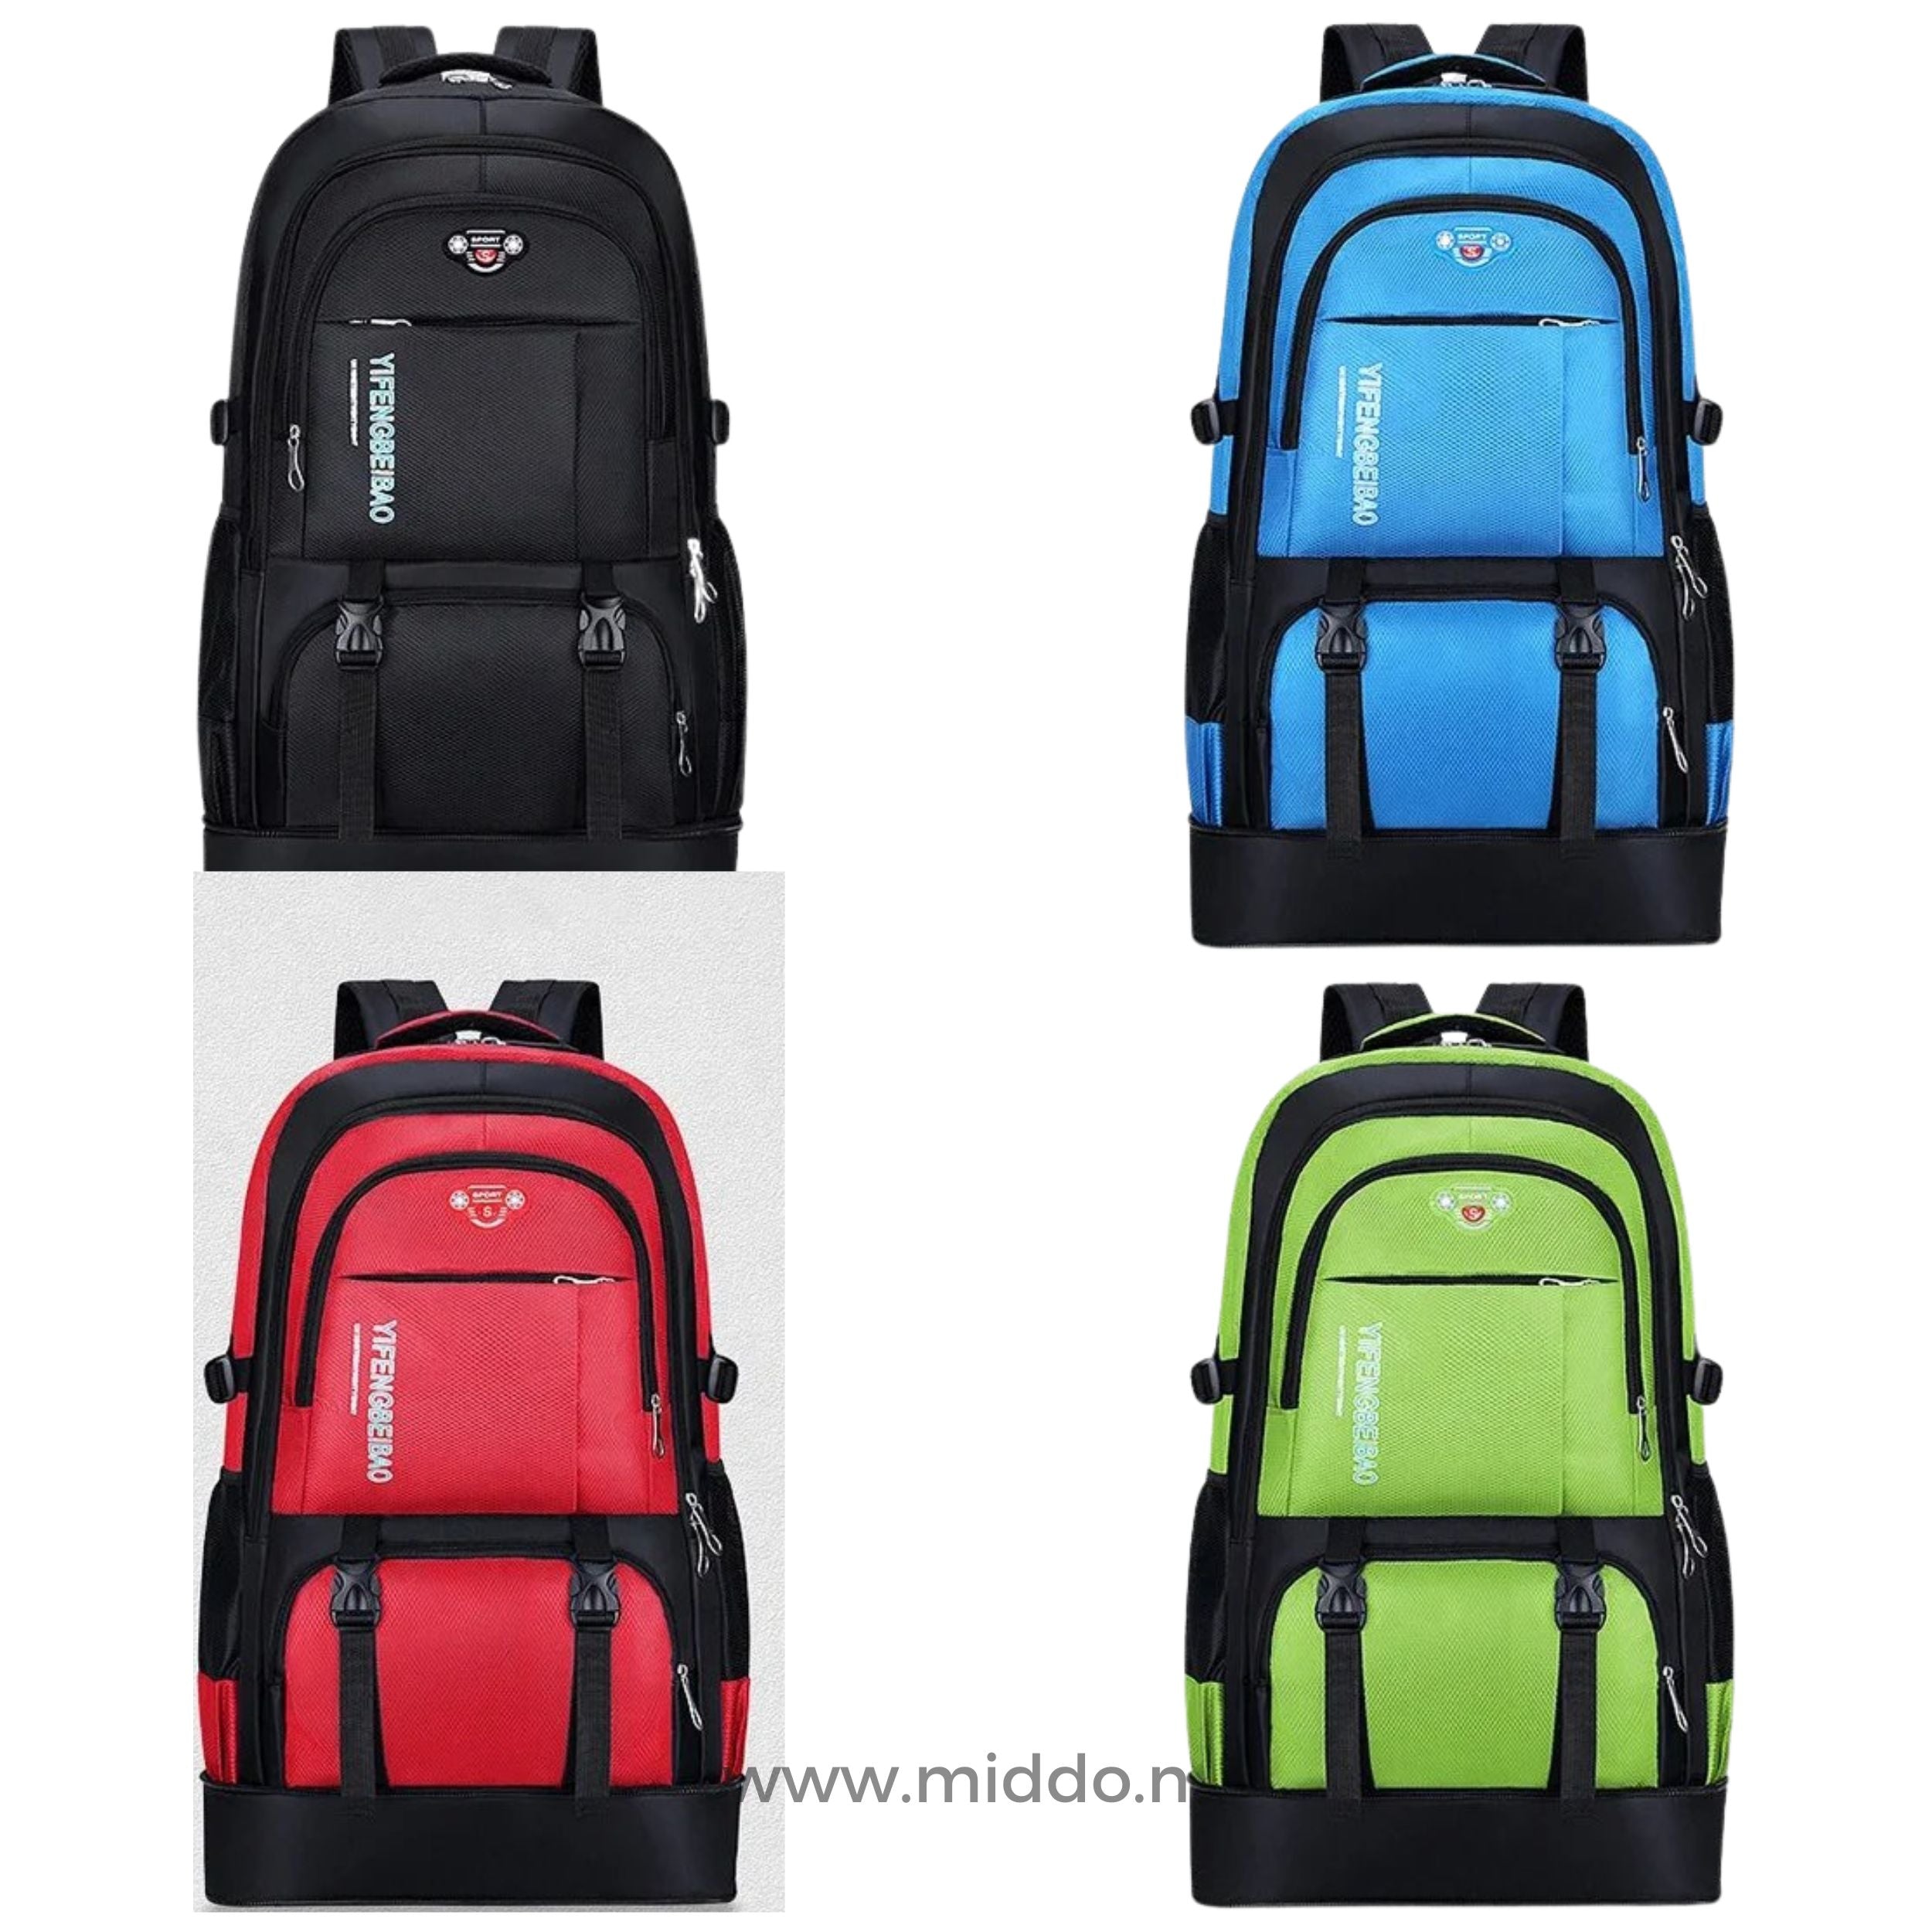 Vier kleuren van VoyagePro Adventure Backpack: groen, blauw, rood, zwart.